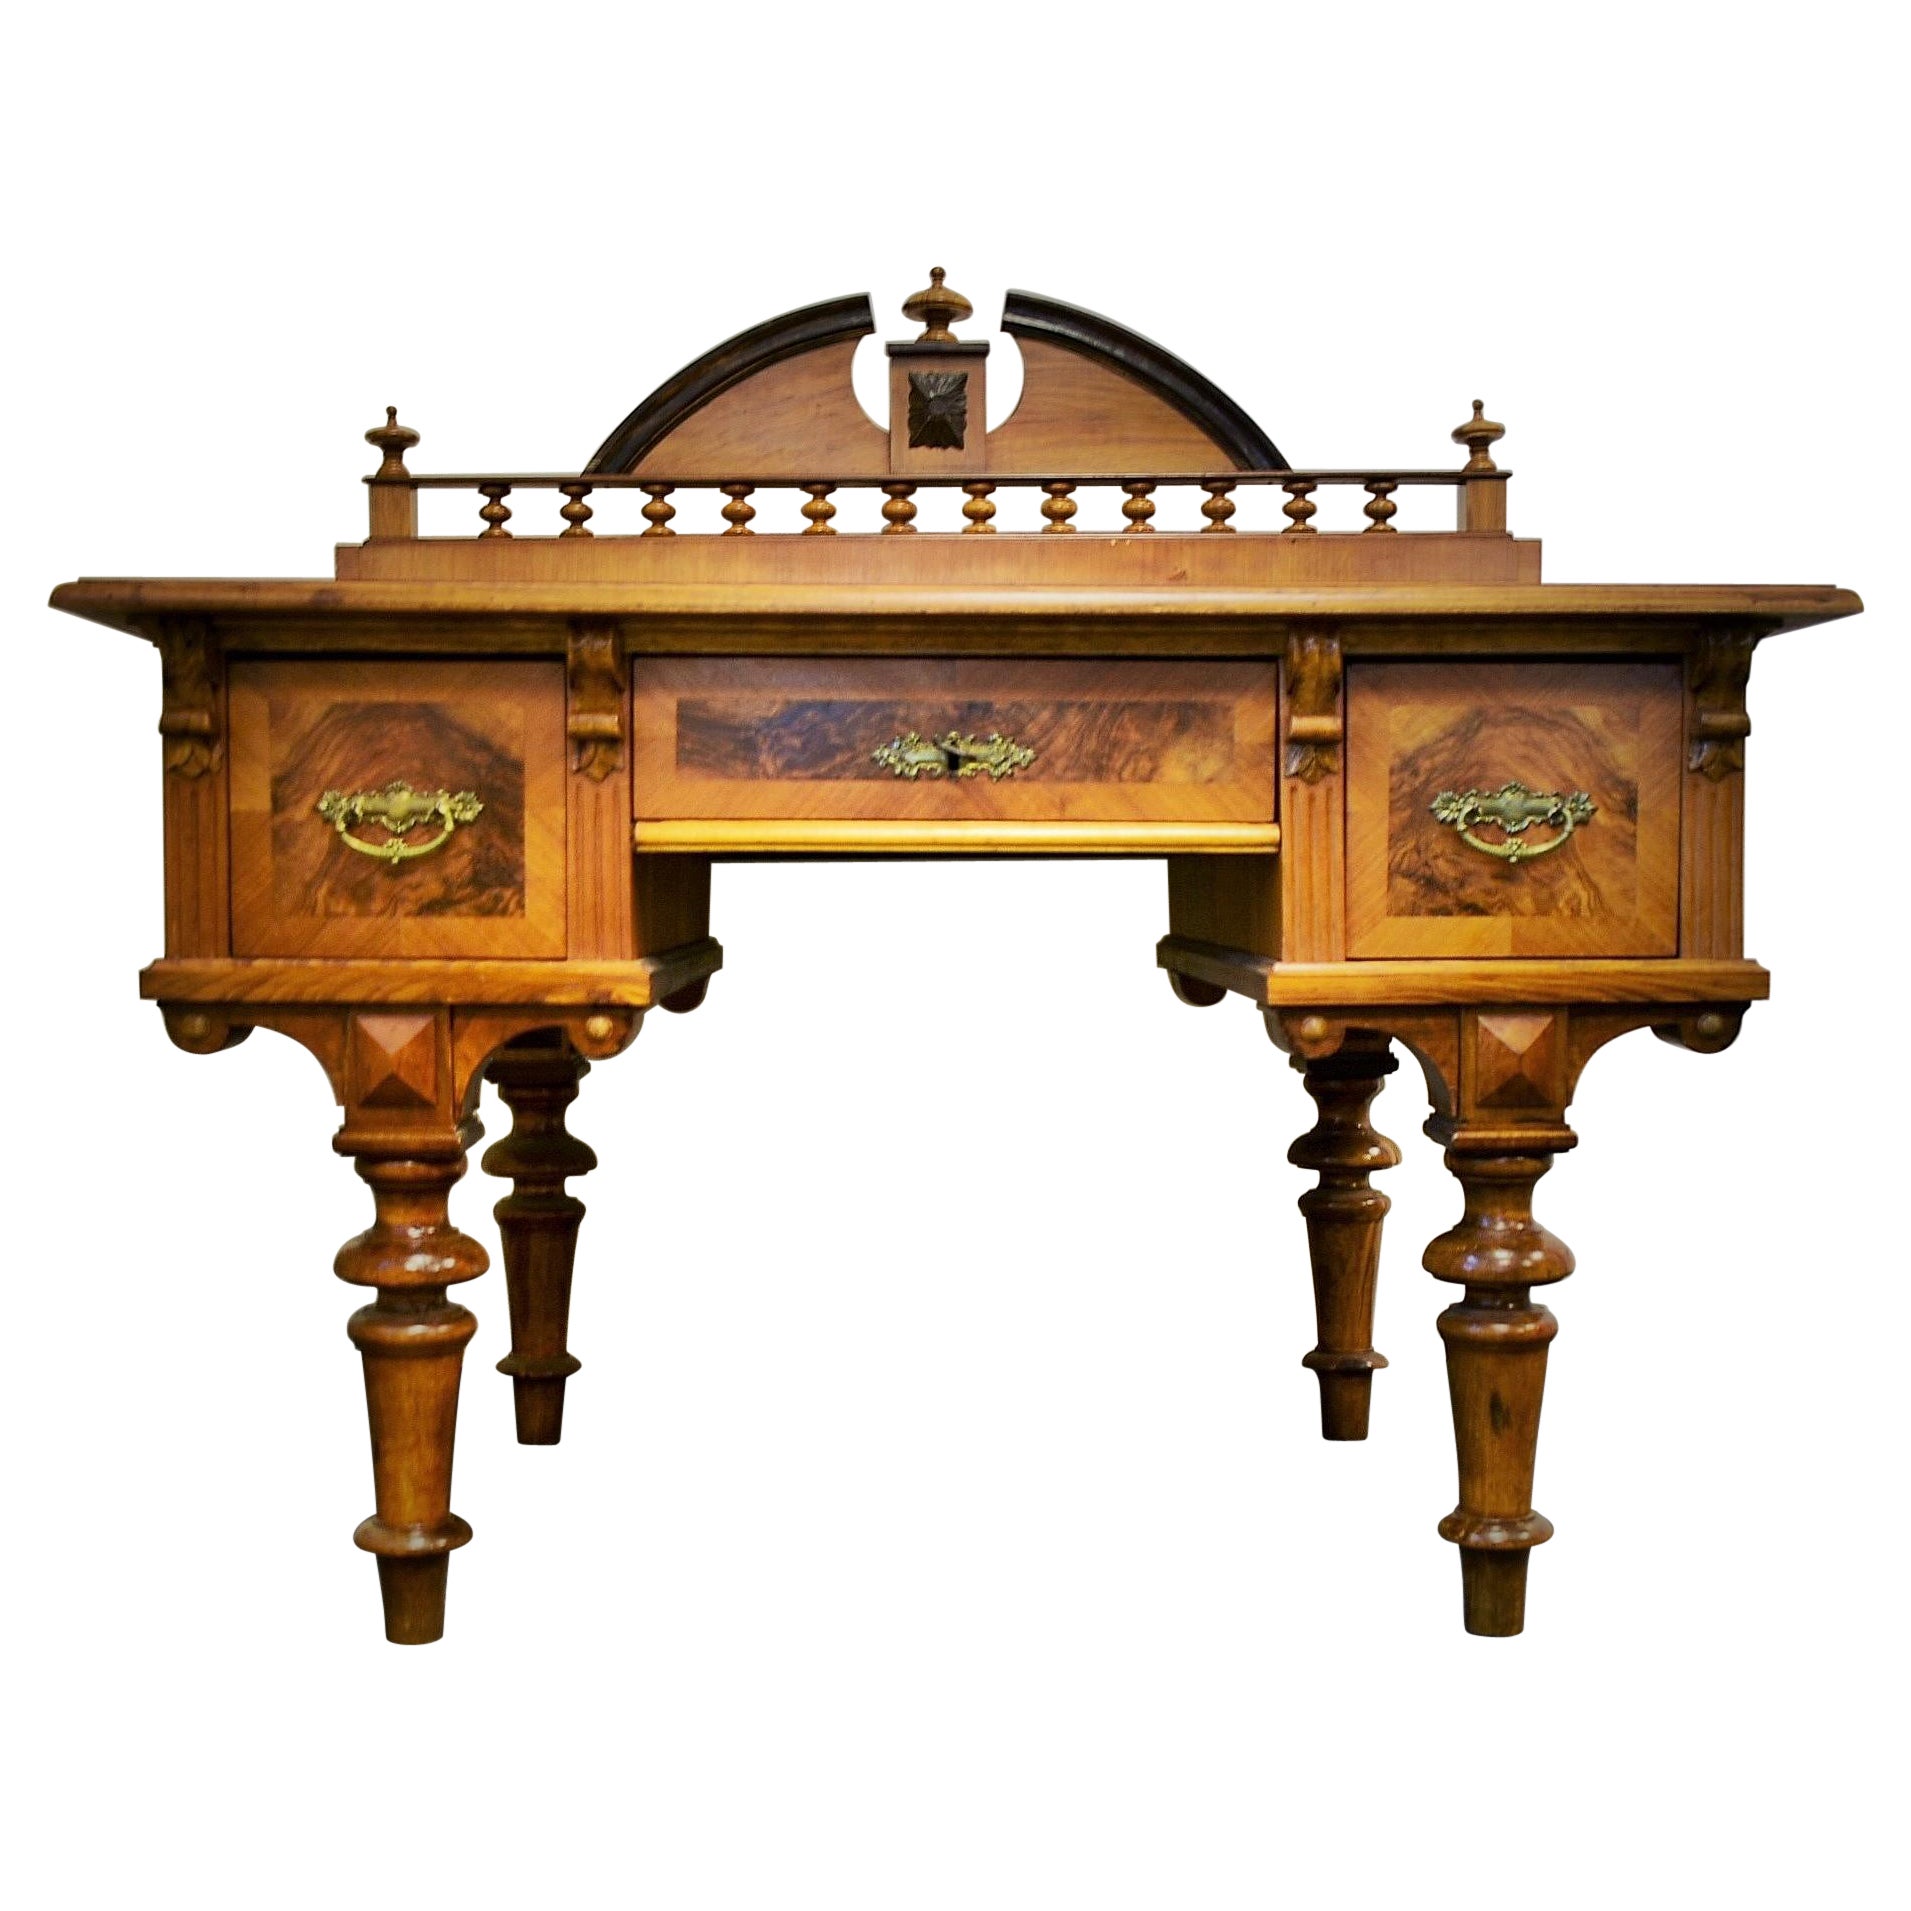 Table de bureau historique des années 1830, bois de noyer, Tchécoslovaquie